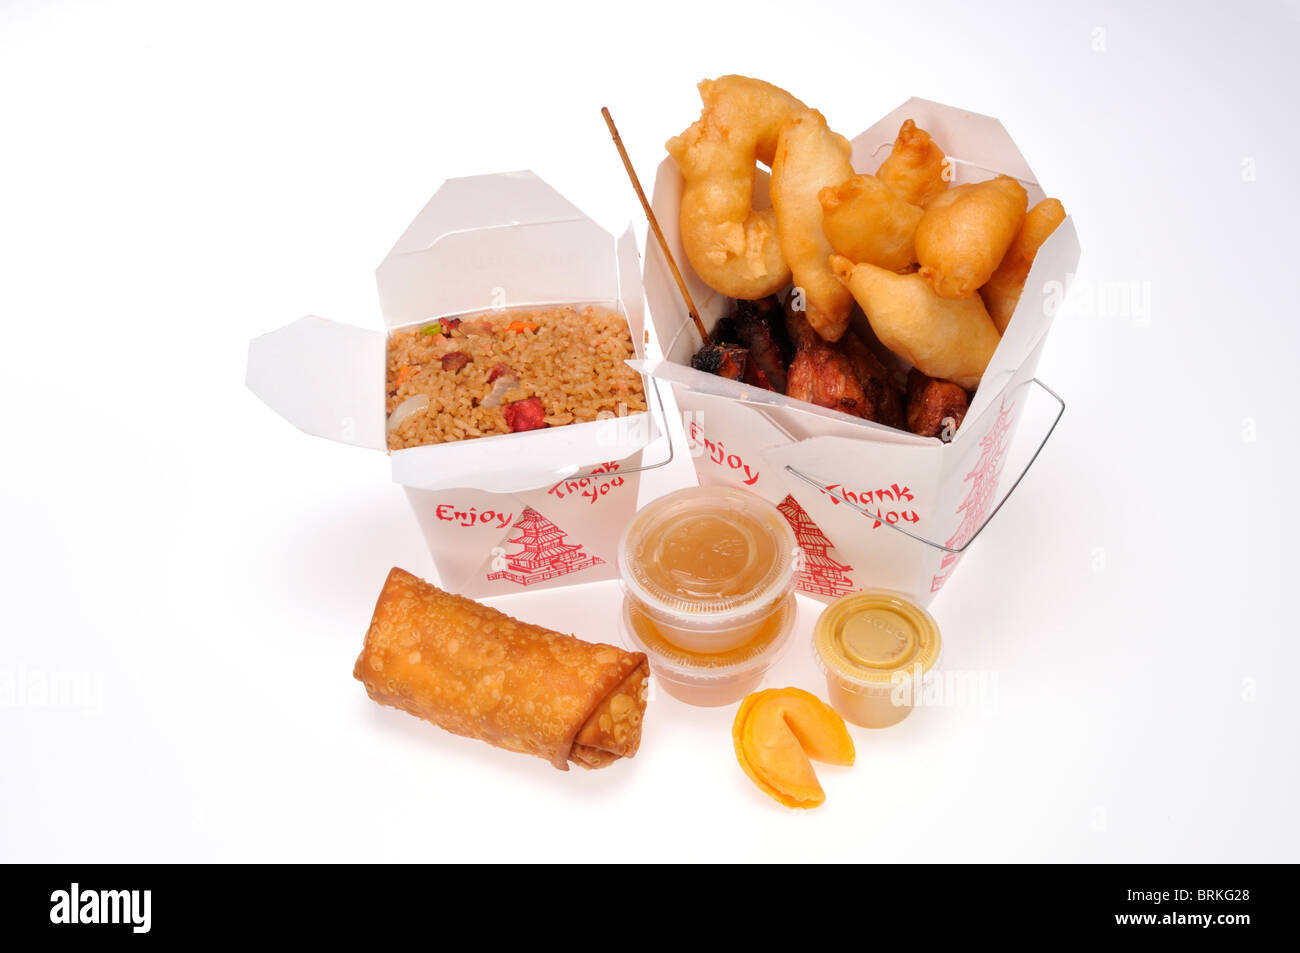 Comida china para llevar cajas de comida de carne de cerdo con arroz frito, pollo dedos y alas, eggroll & Beef teriyaki con salsa de soja y de inmersión. Foto de stock